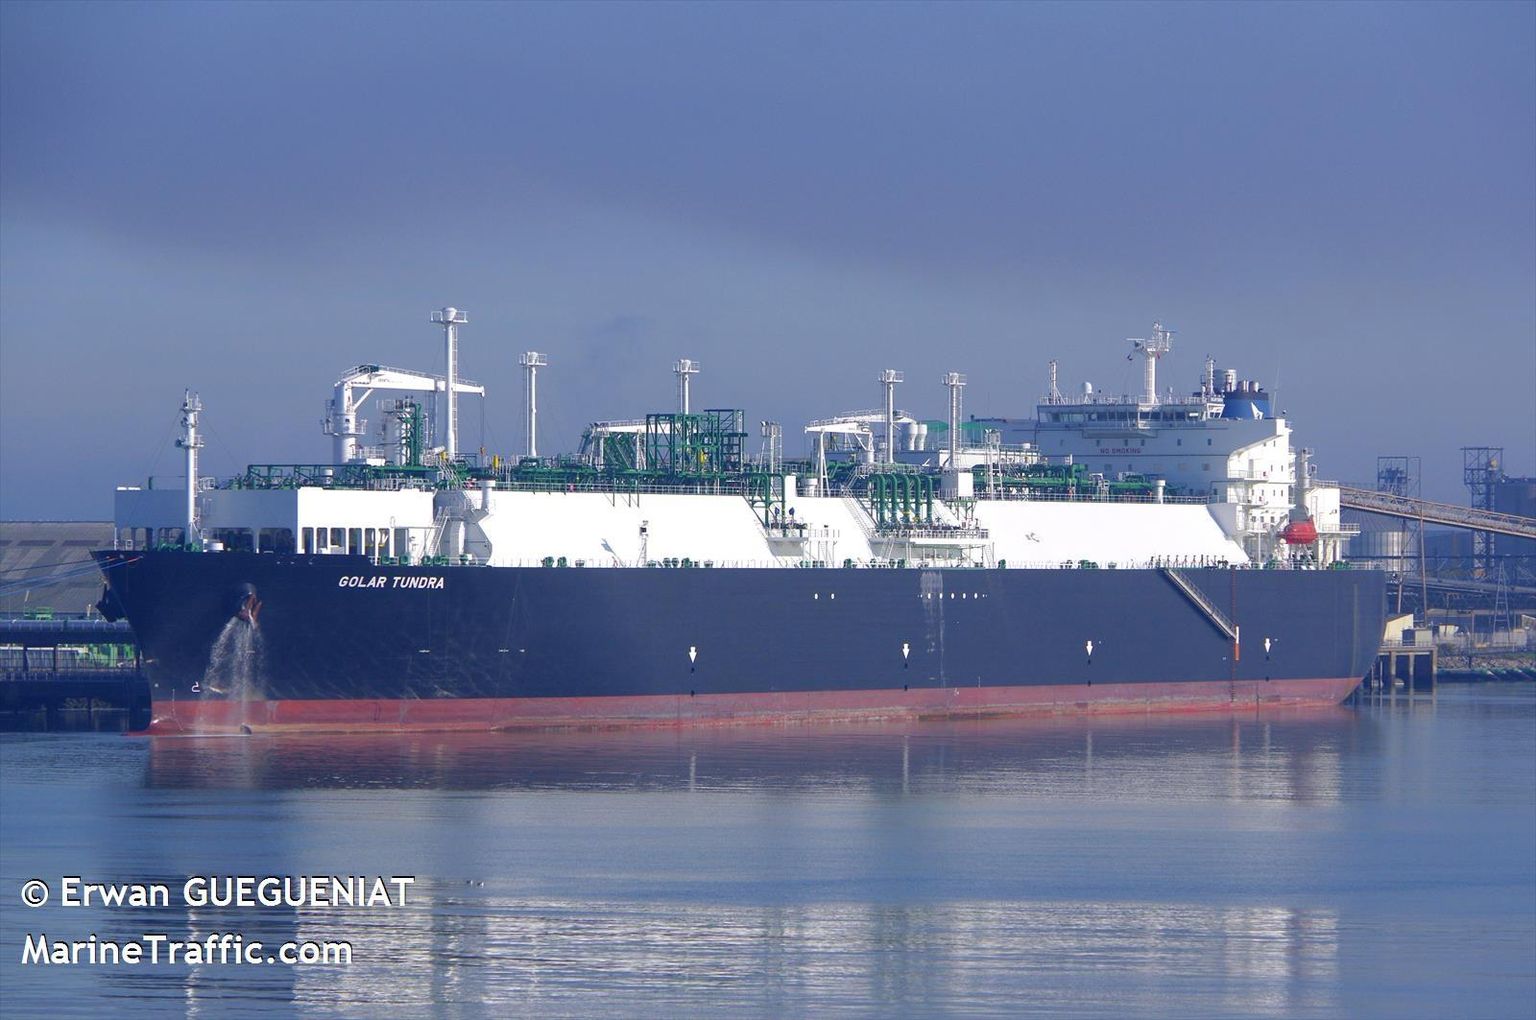 Taasgaasistamise seadmetega LNG-tanker Golar Tundra on üks, mille kasutamist LNG-terminallaevana valitsus kaalub.